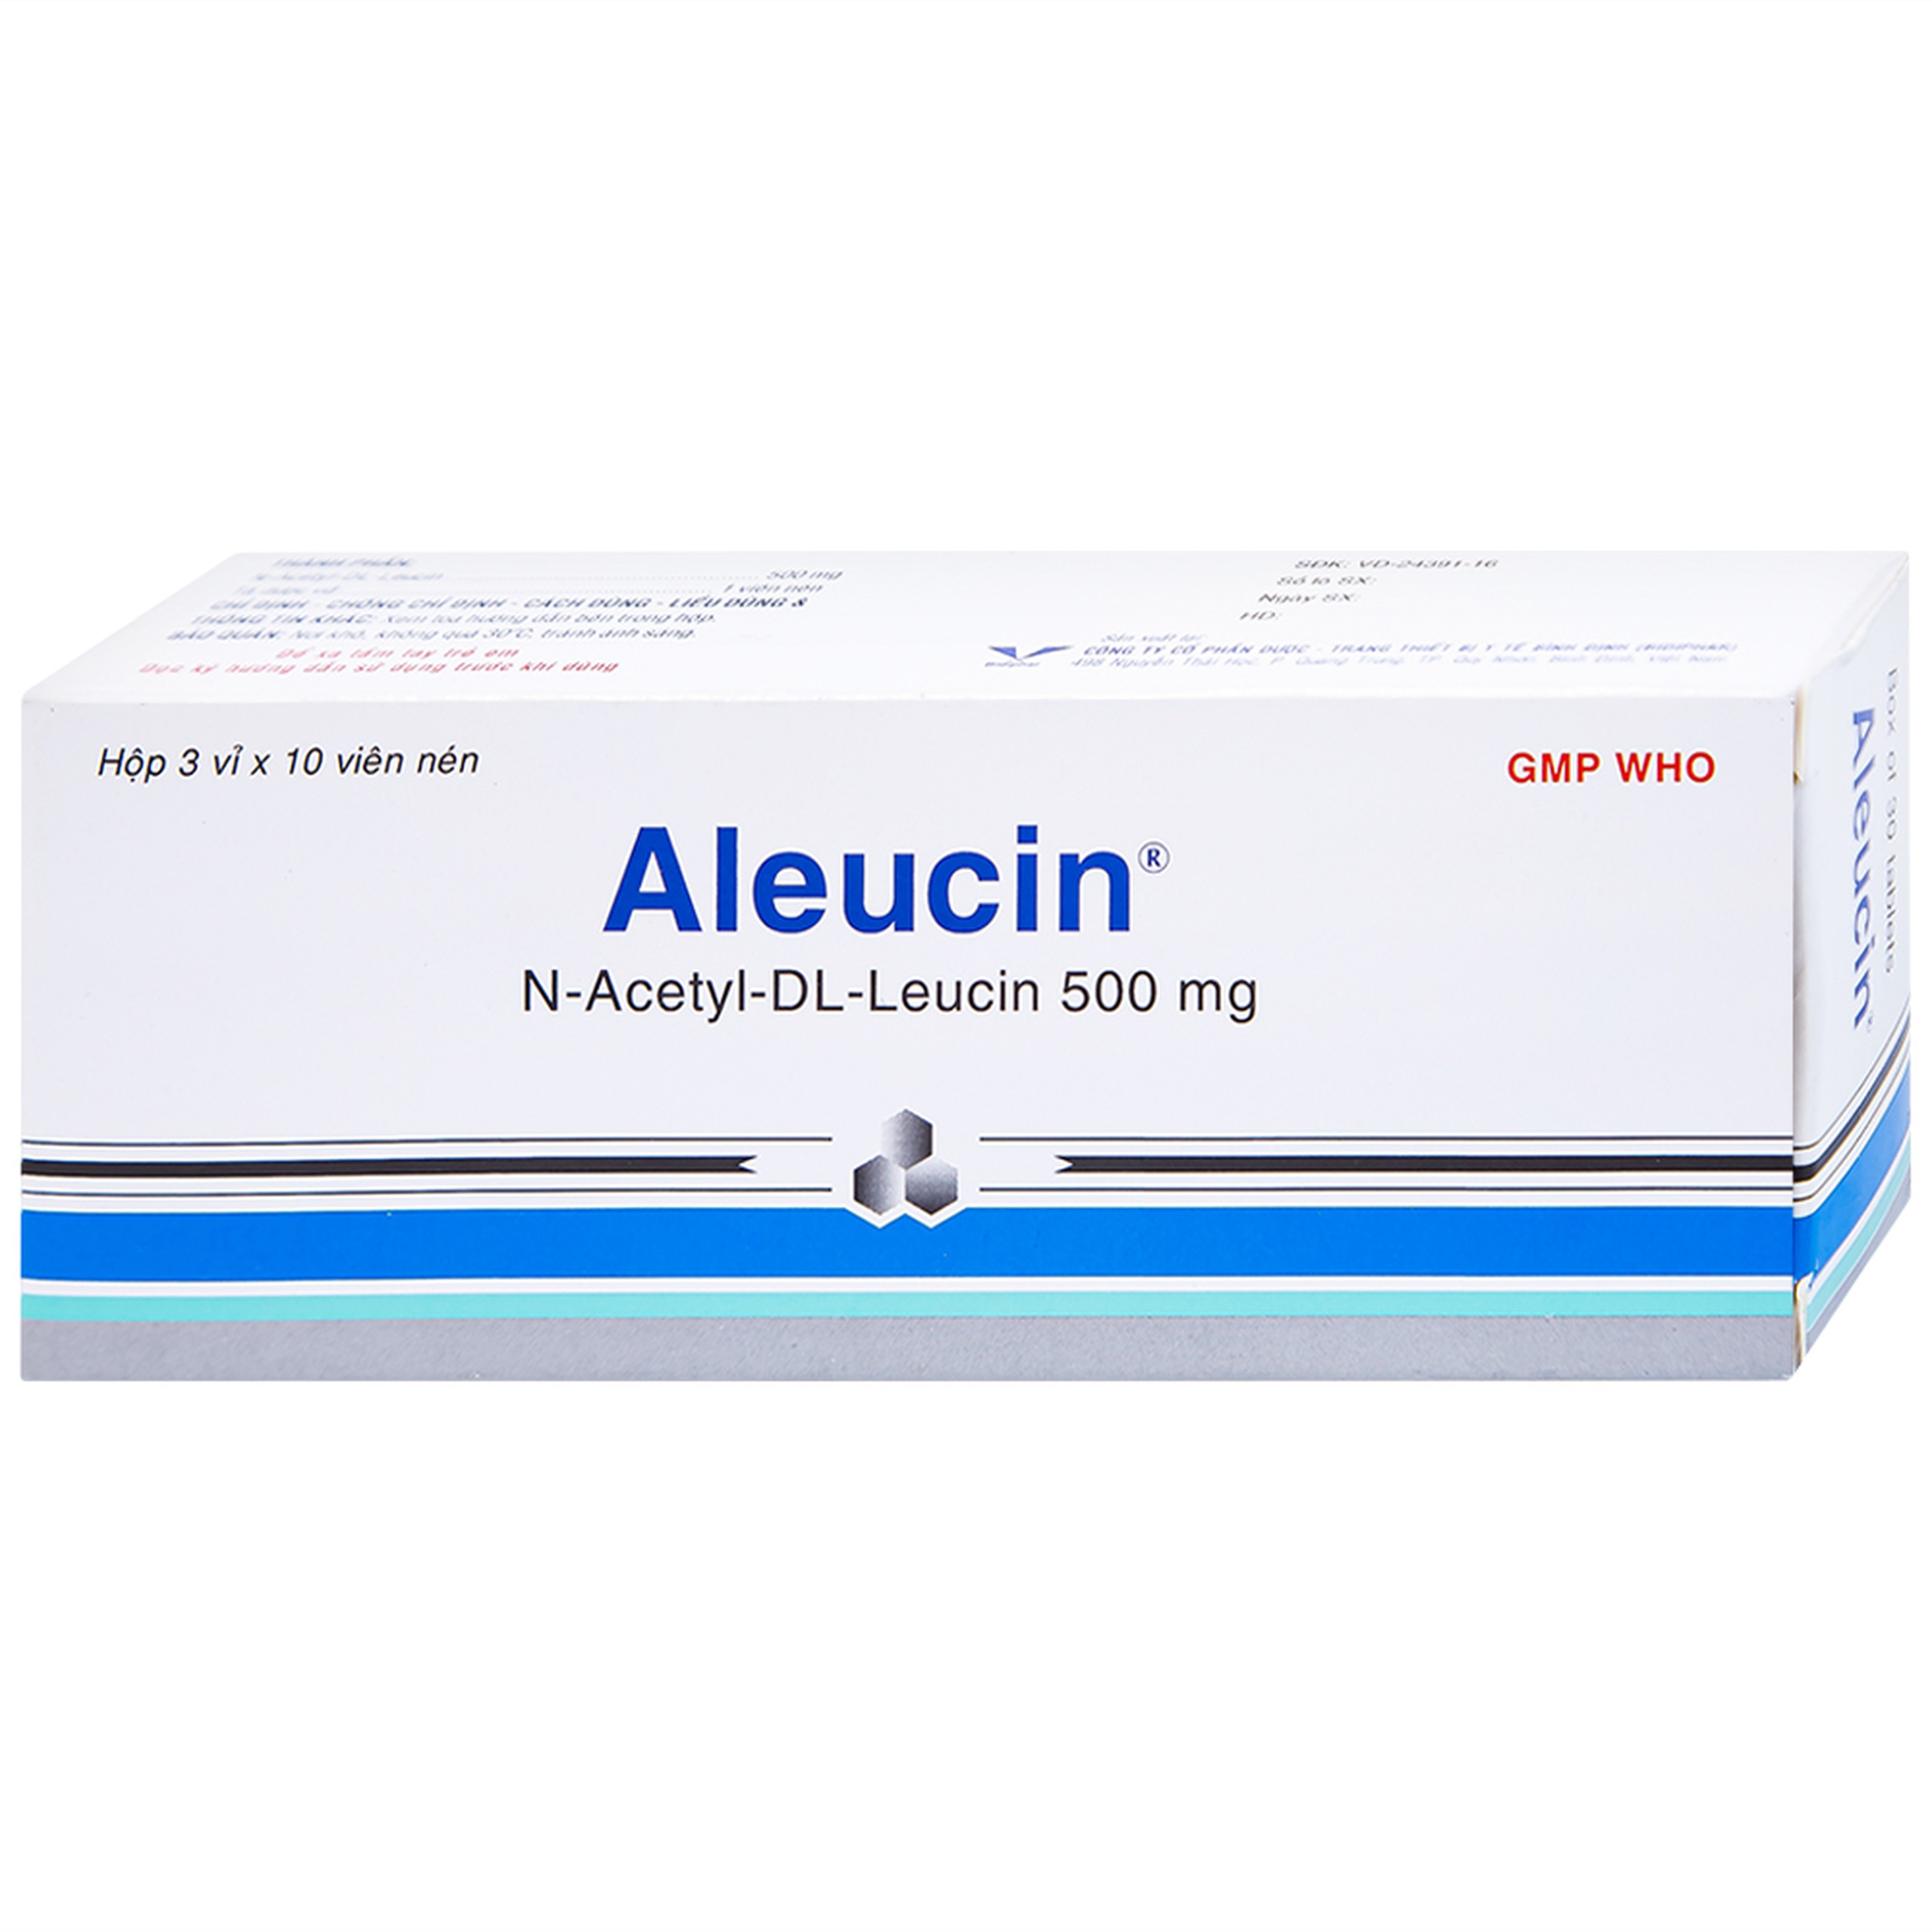 Thuốc Aleucin 500mg Bidiphar điều trị các cơn chóng mặt (3 vỉ x 10 viên)